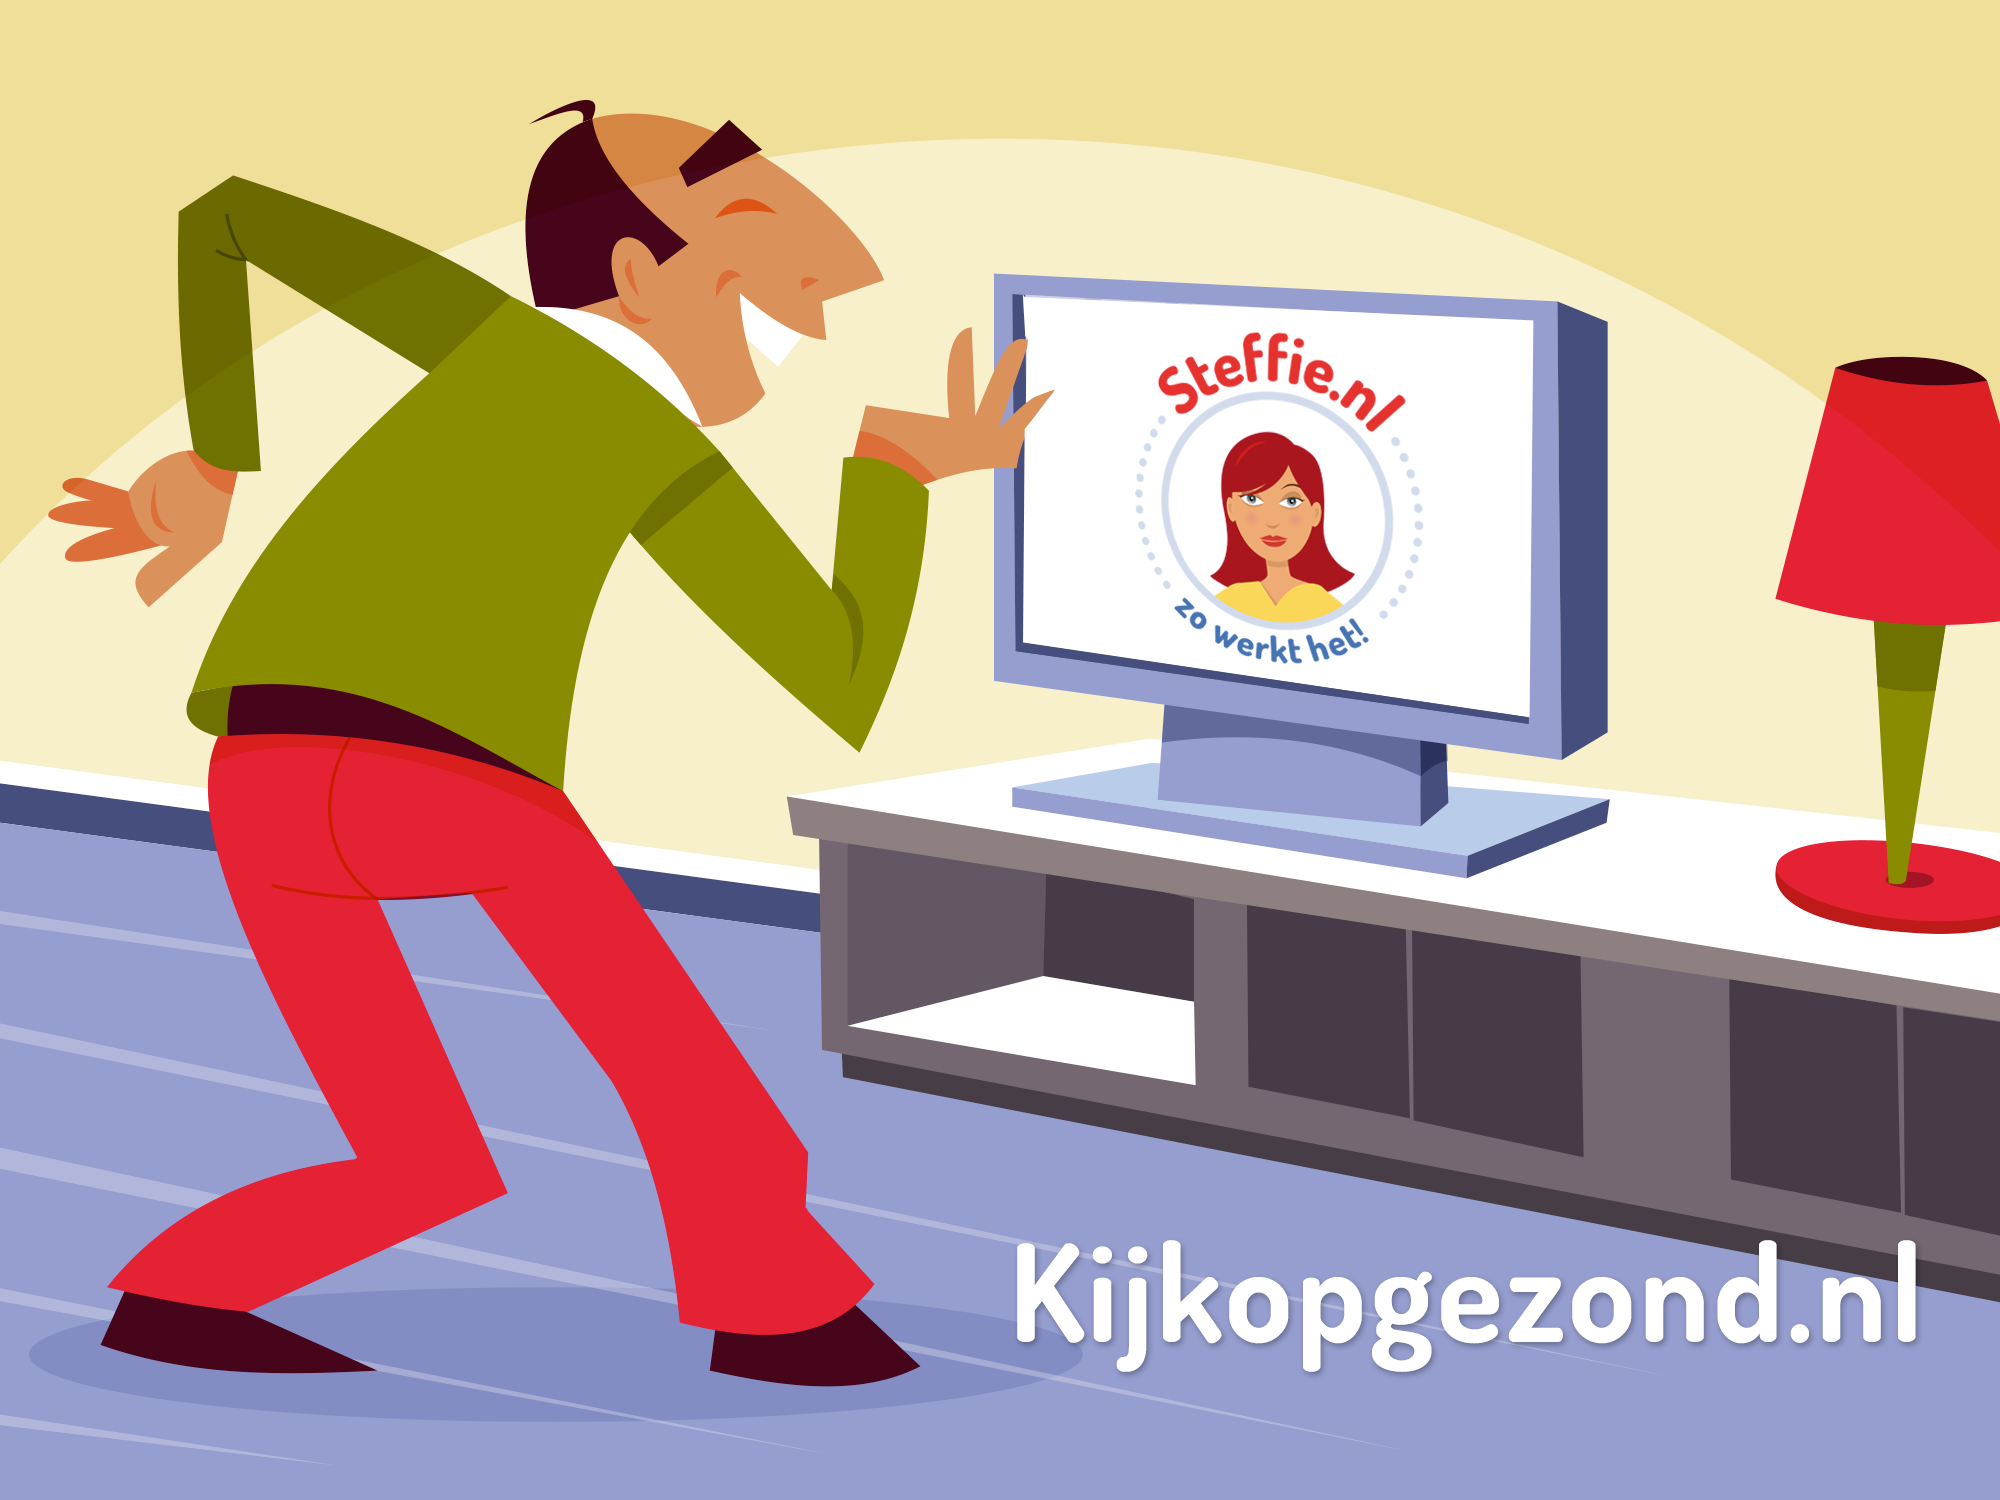 Meer weten over gezond eten en bewegen? Dan kijk dan ook eens op Kijkopgezond.nl.